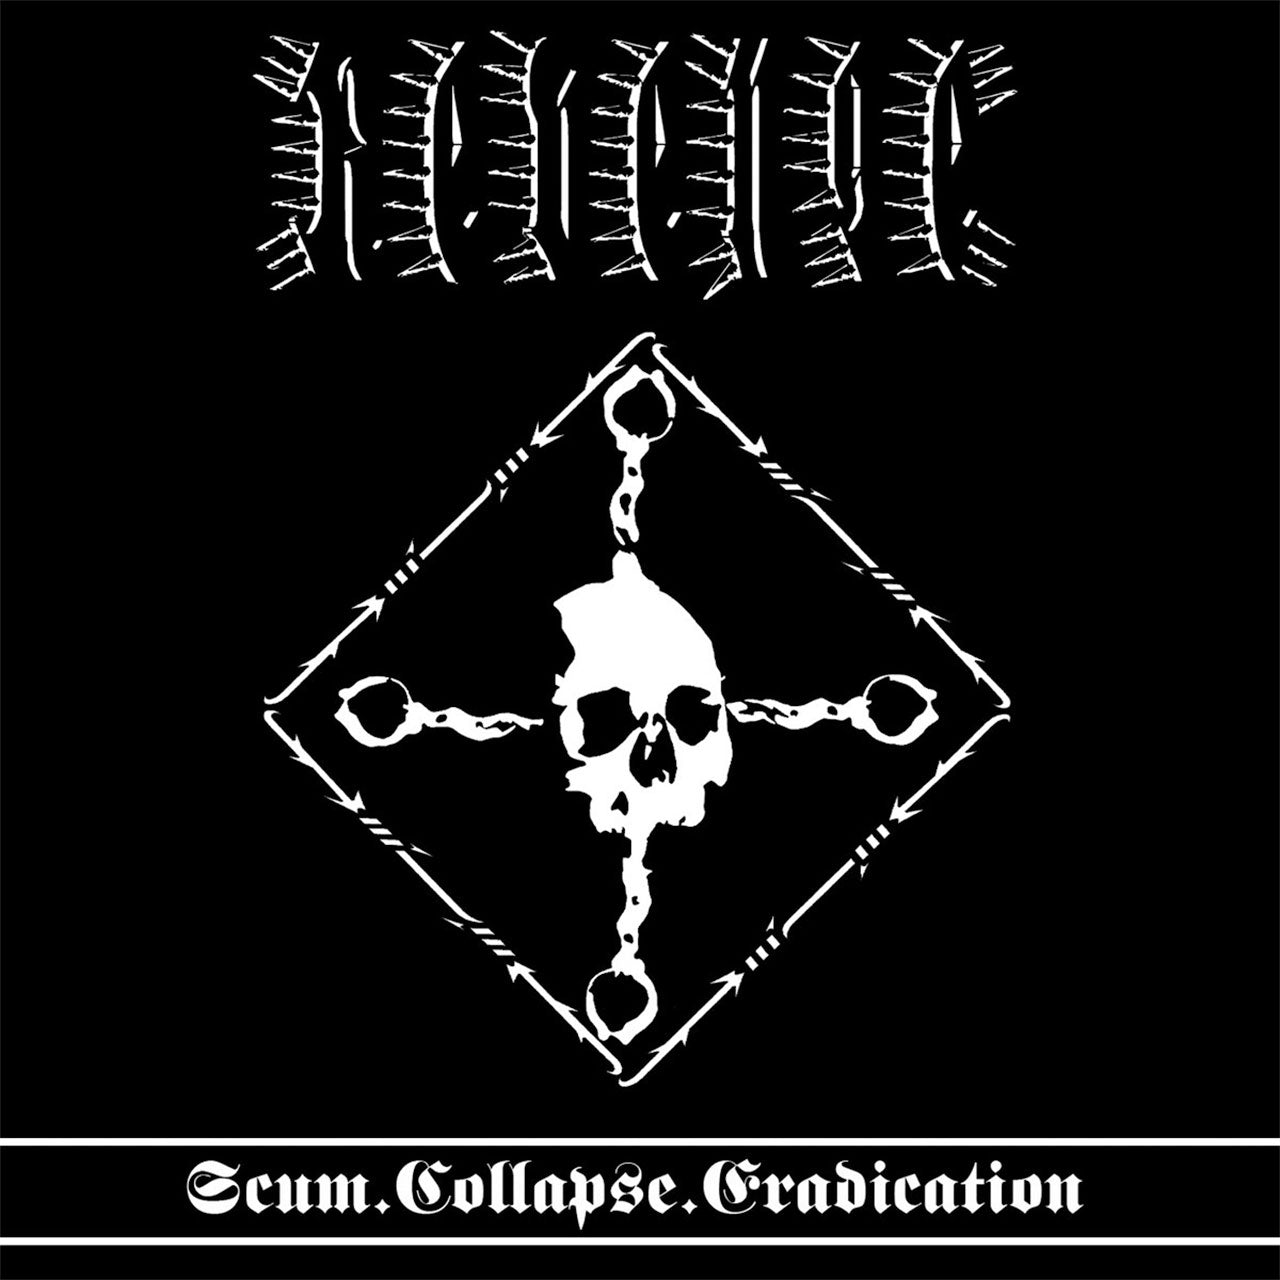 Revenge - Scum.Collapse.Eradication (European Edition) (CD)